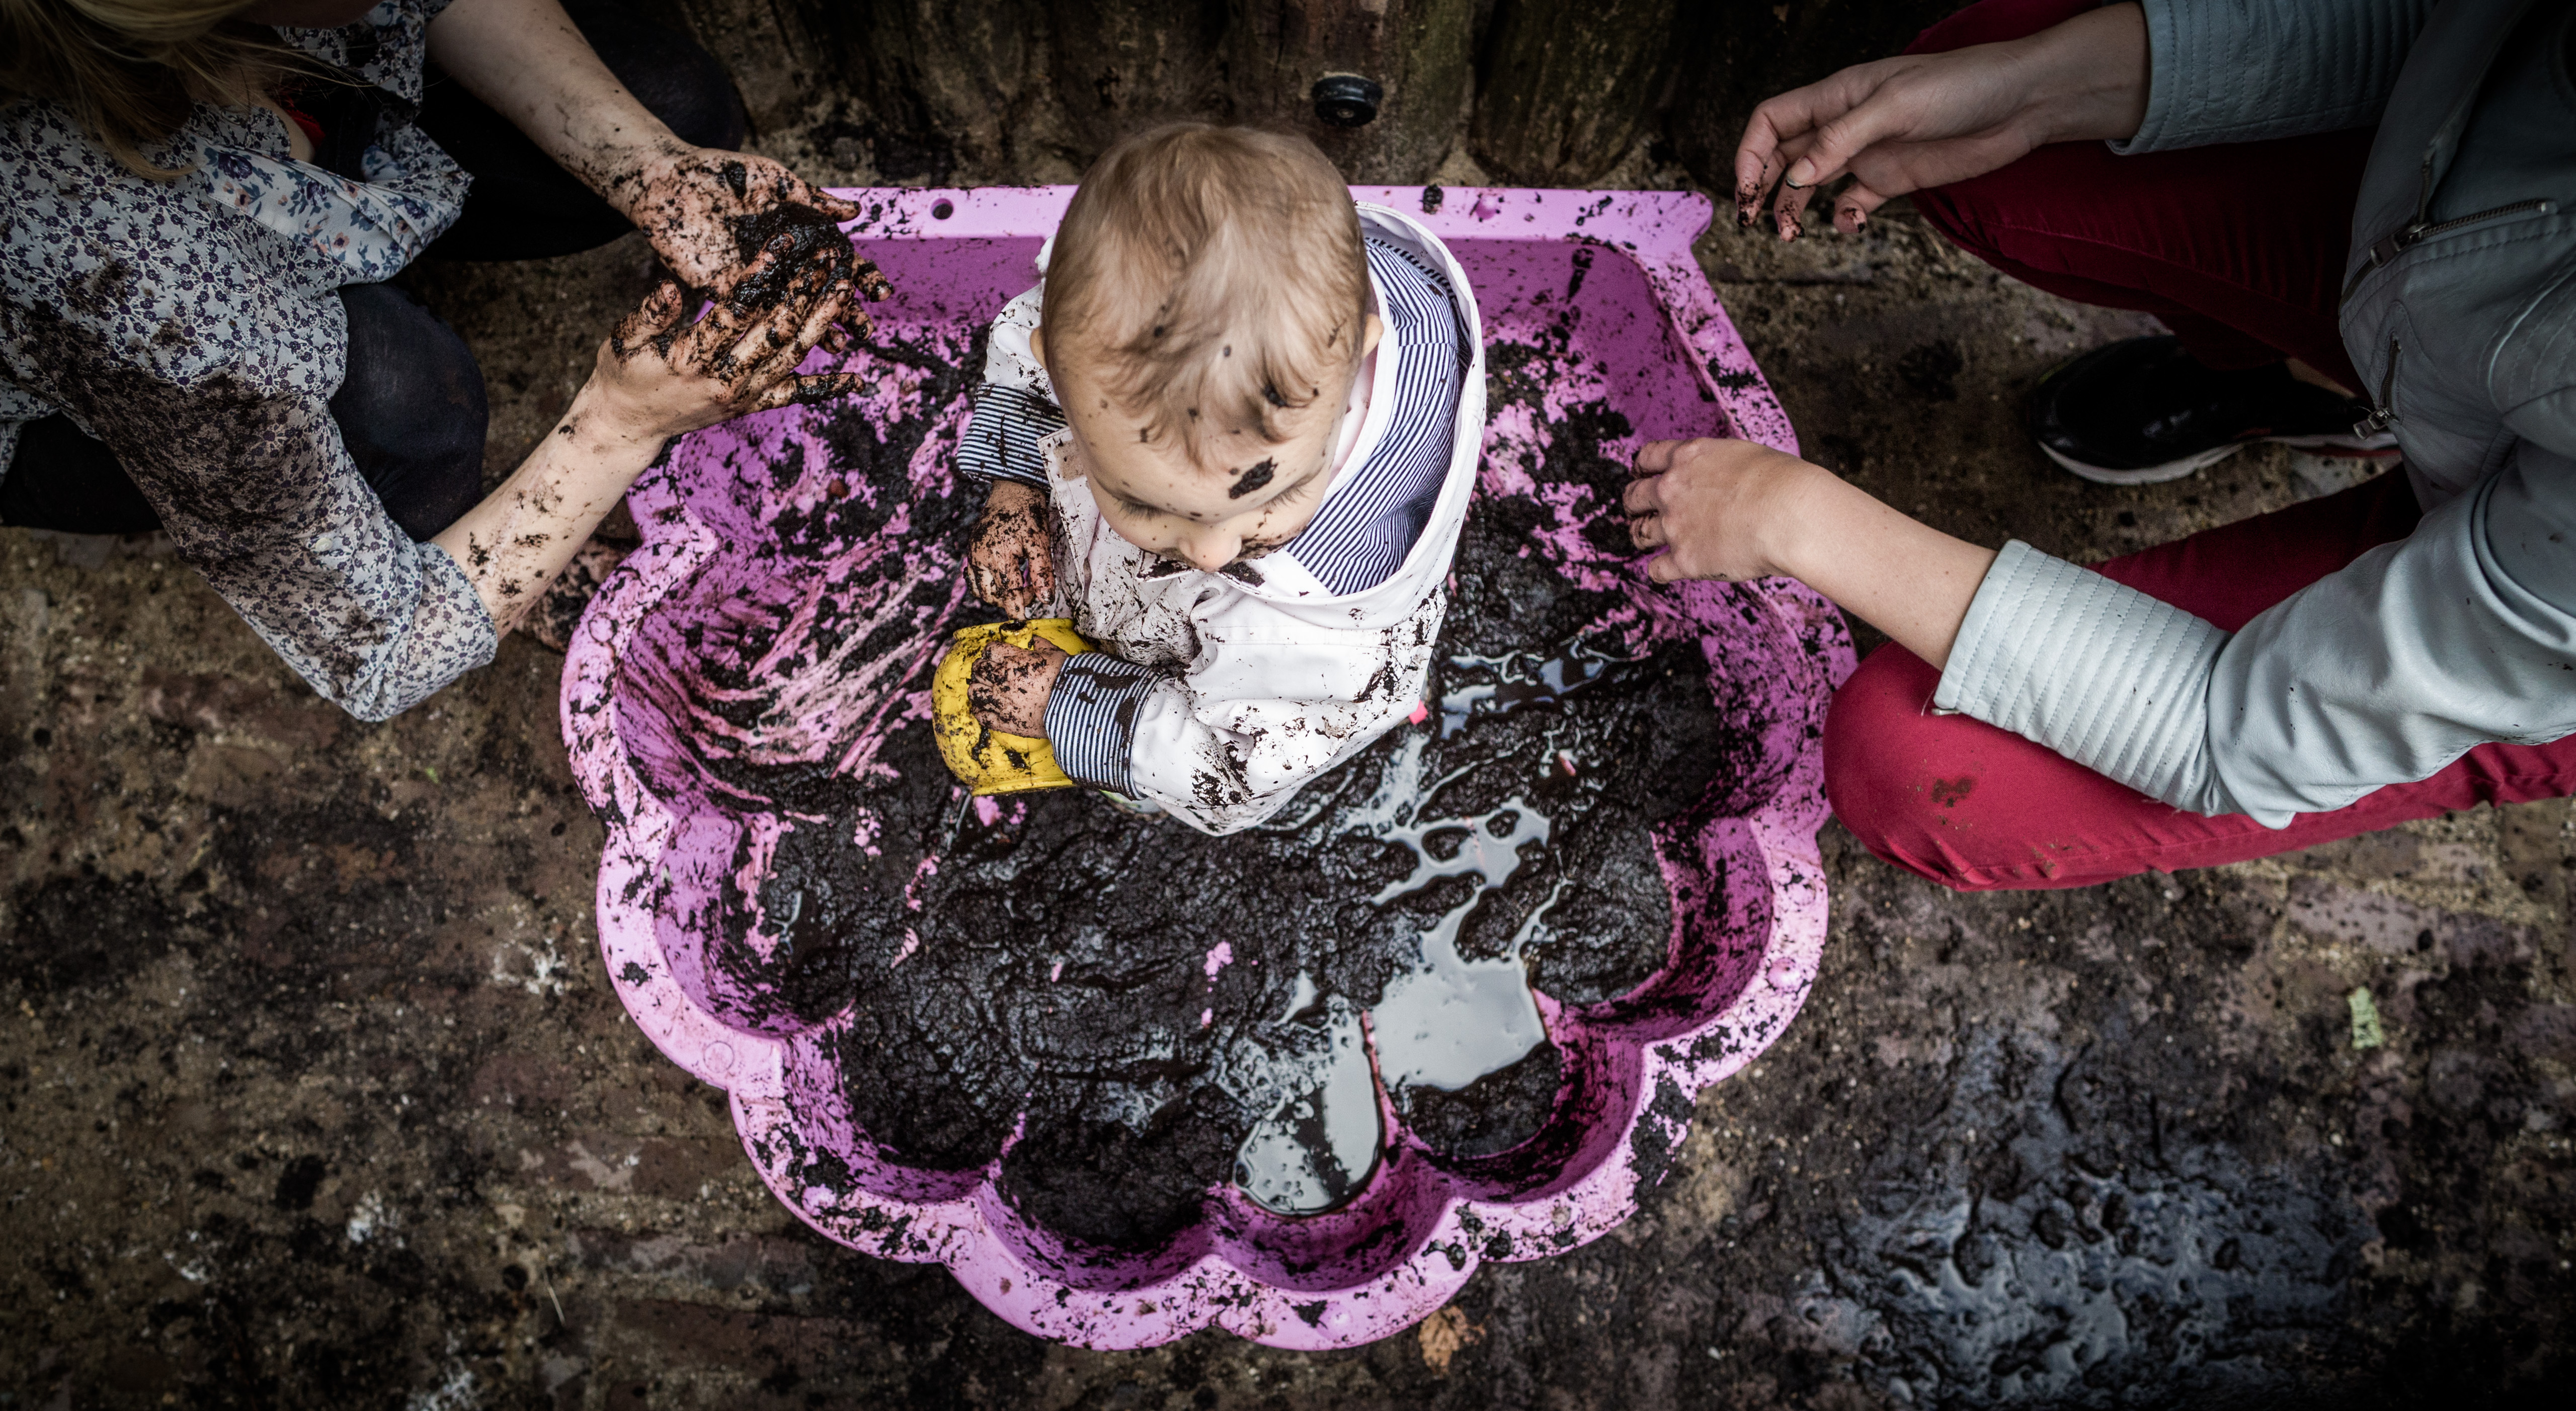 2016-06-29 10:38:39 AMSTERDAM - Kinderen van kinderopvang Kleine Wereld spelen in de modder op de eerste ModderDag. IVN (Instituut voor Natuureducatie en Duurzaamheid) organiseert vanaf dit jaar een landelijke dag voor kinderen met activiteiten met modder, bedoeld om de verbinding met hun omgeving te vergroten. ANP FREEK VAN DEN BERGH